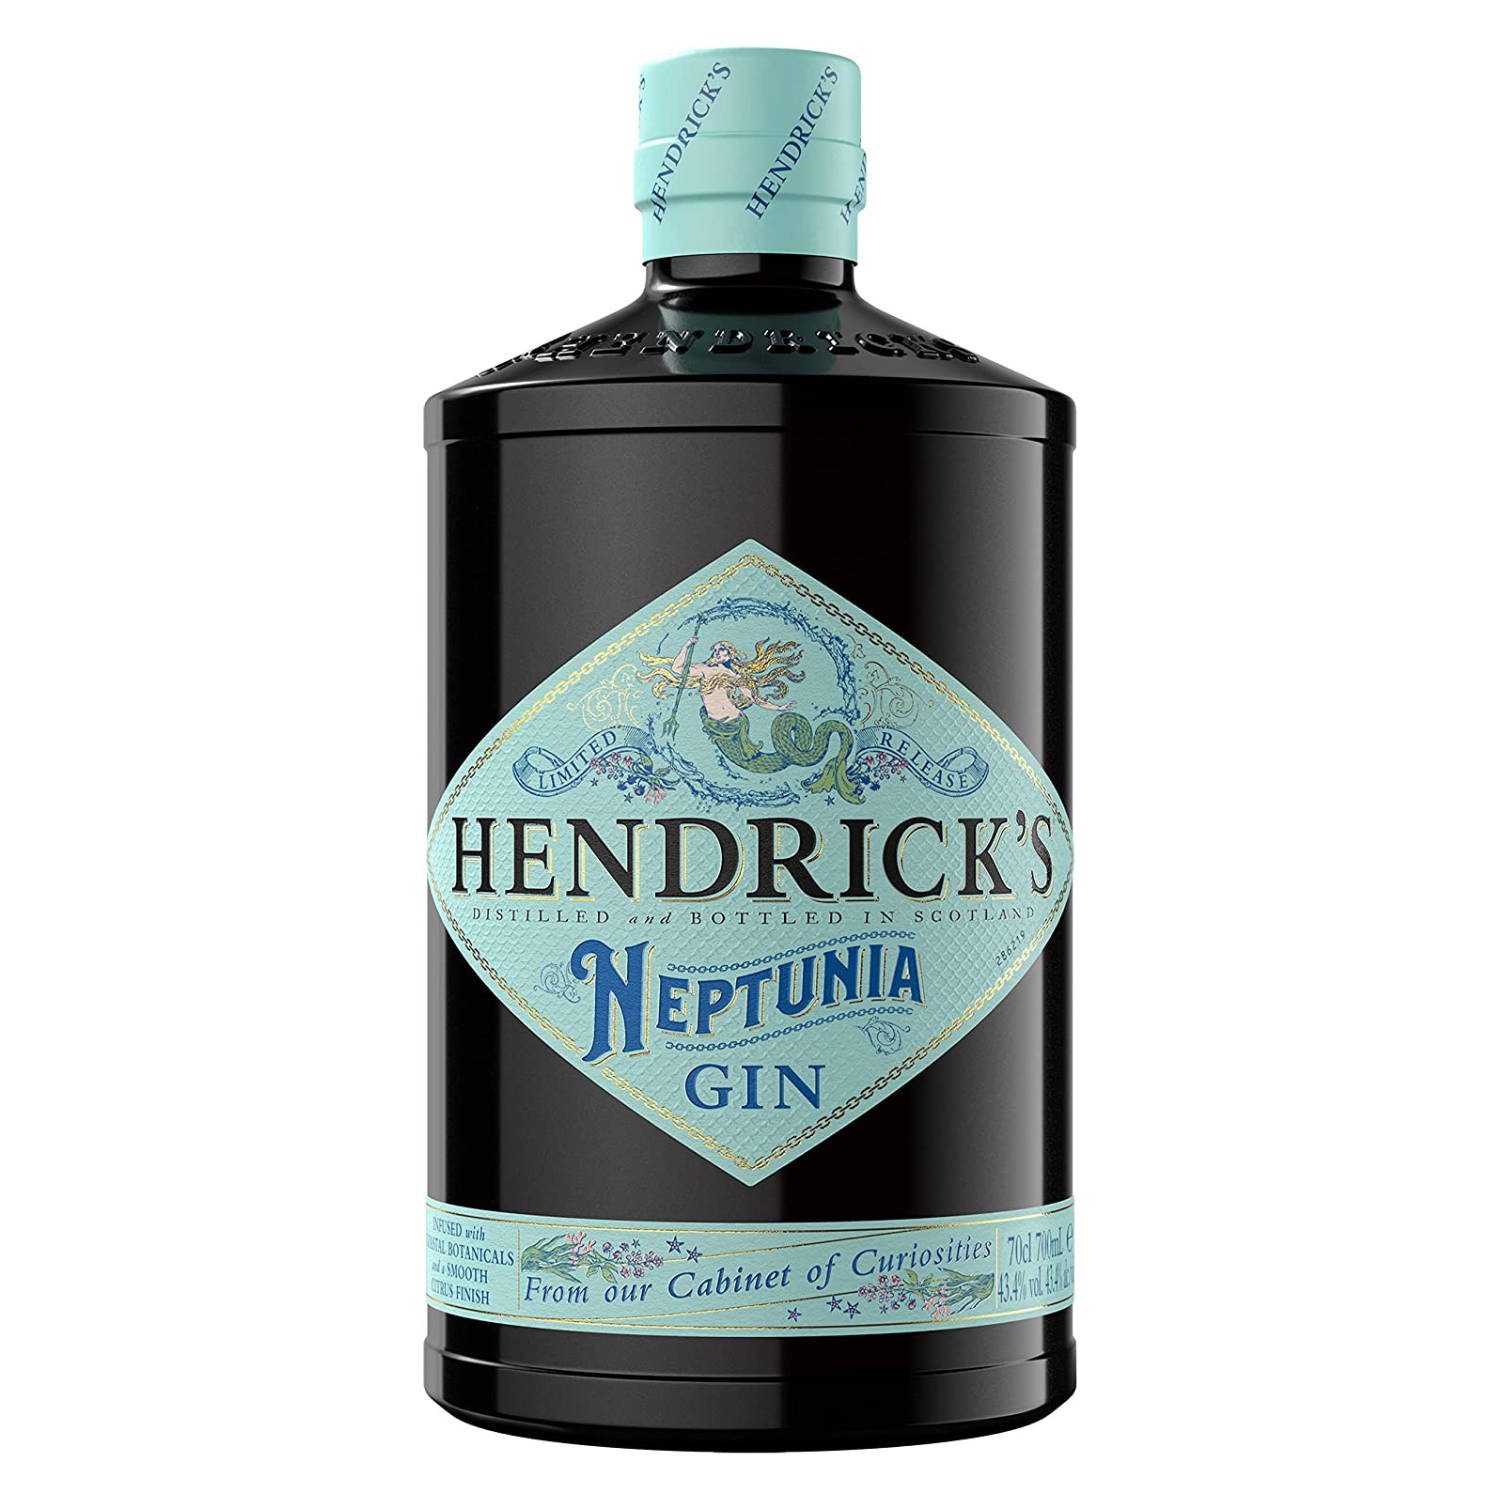 Hendrick's Neptunia Gin 700ml